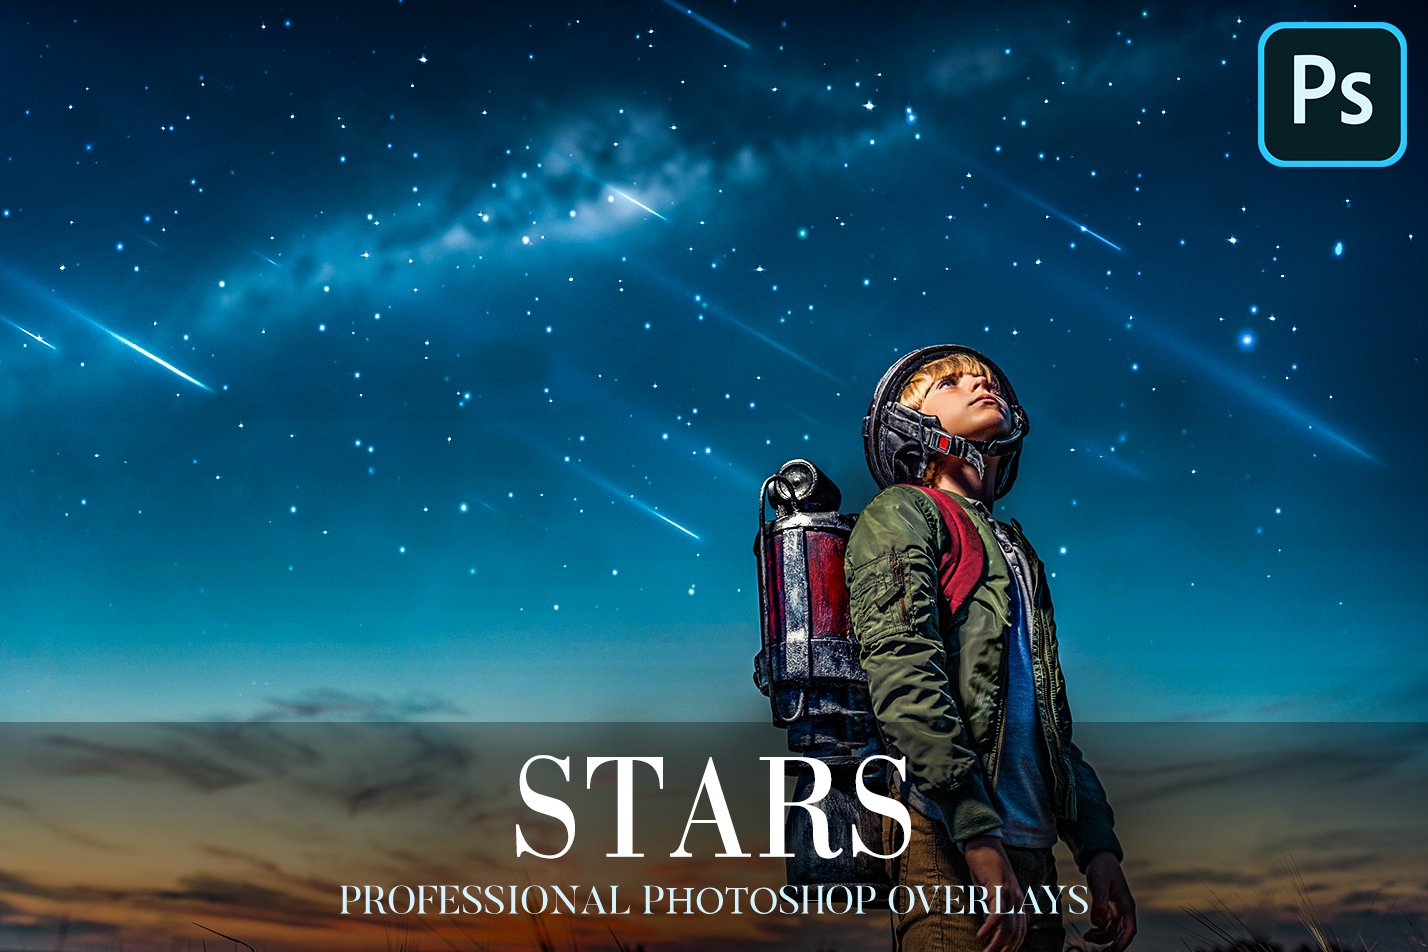 Stars Overlays Photoshopcover image.